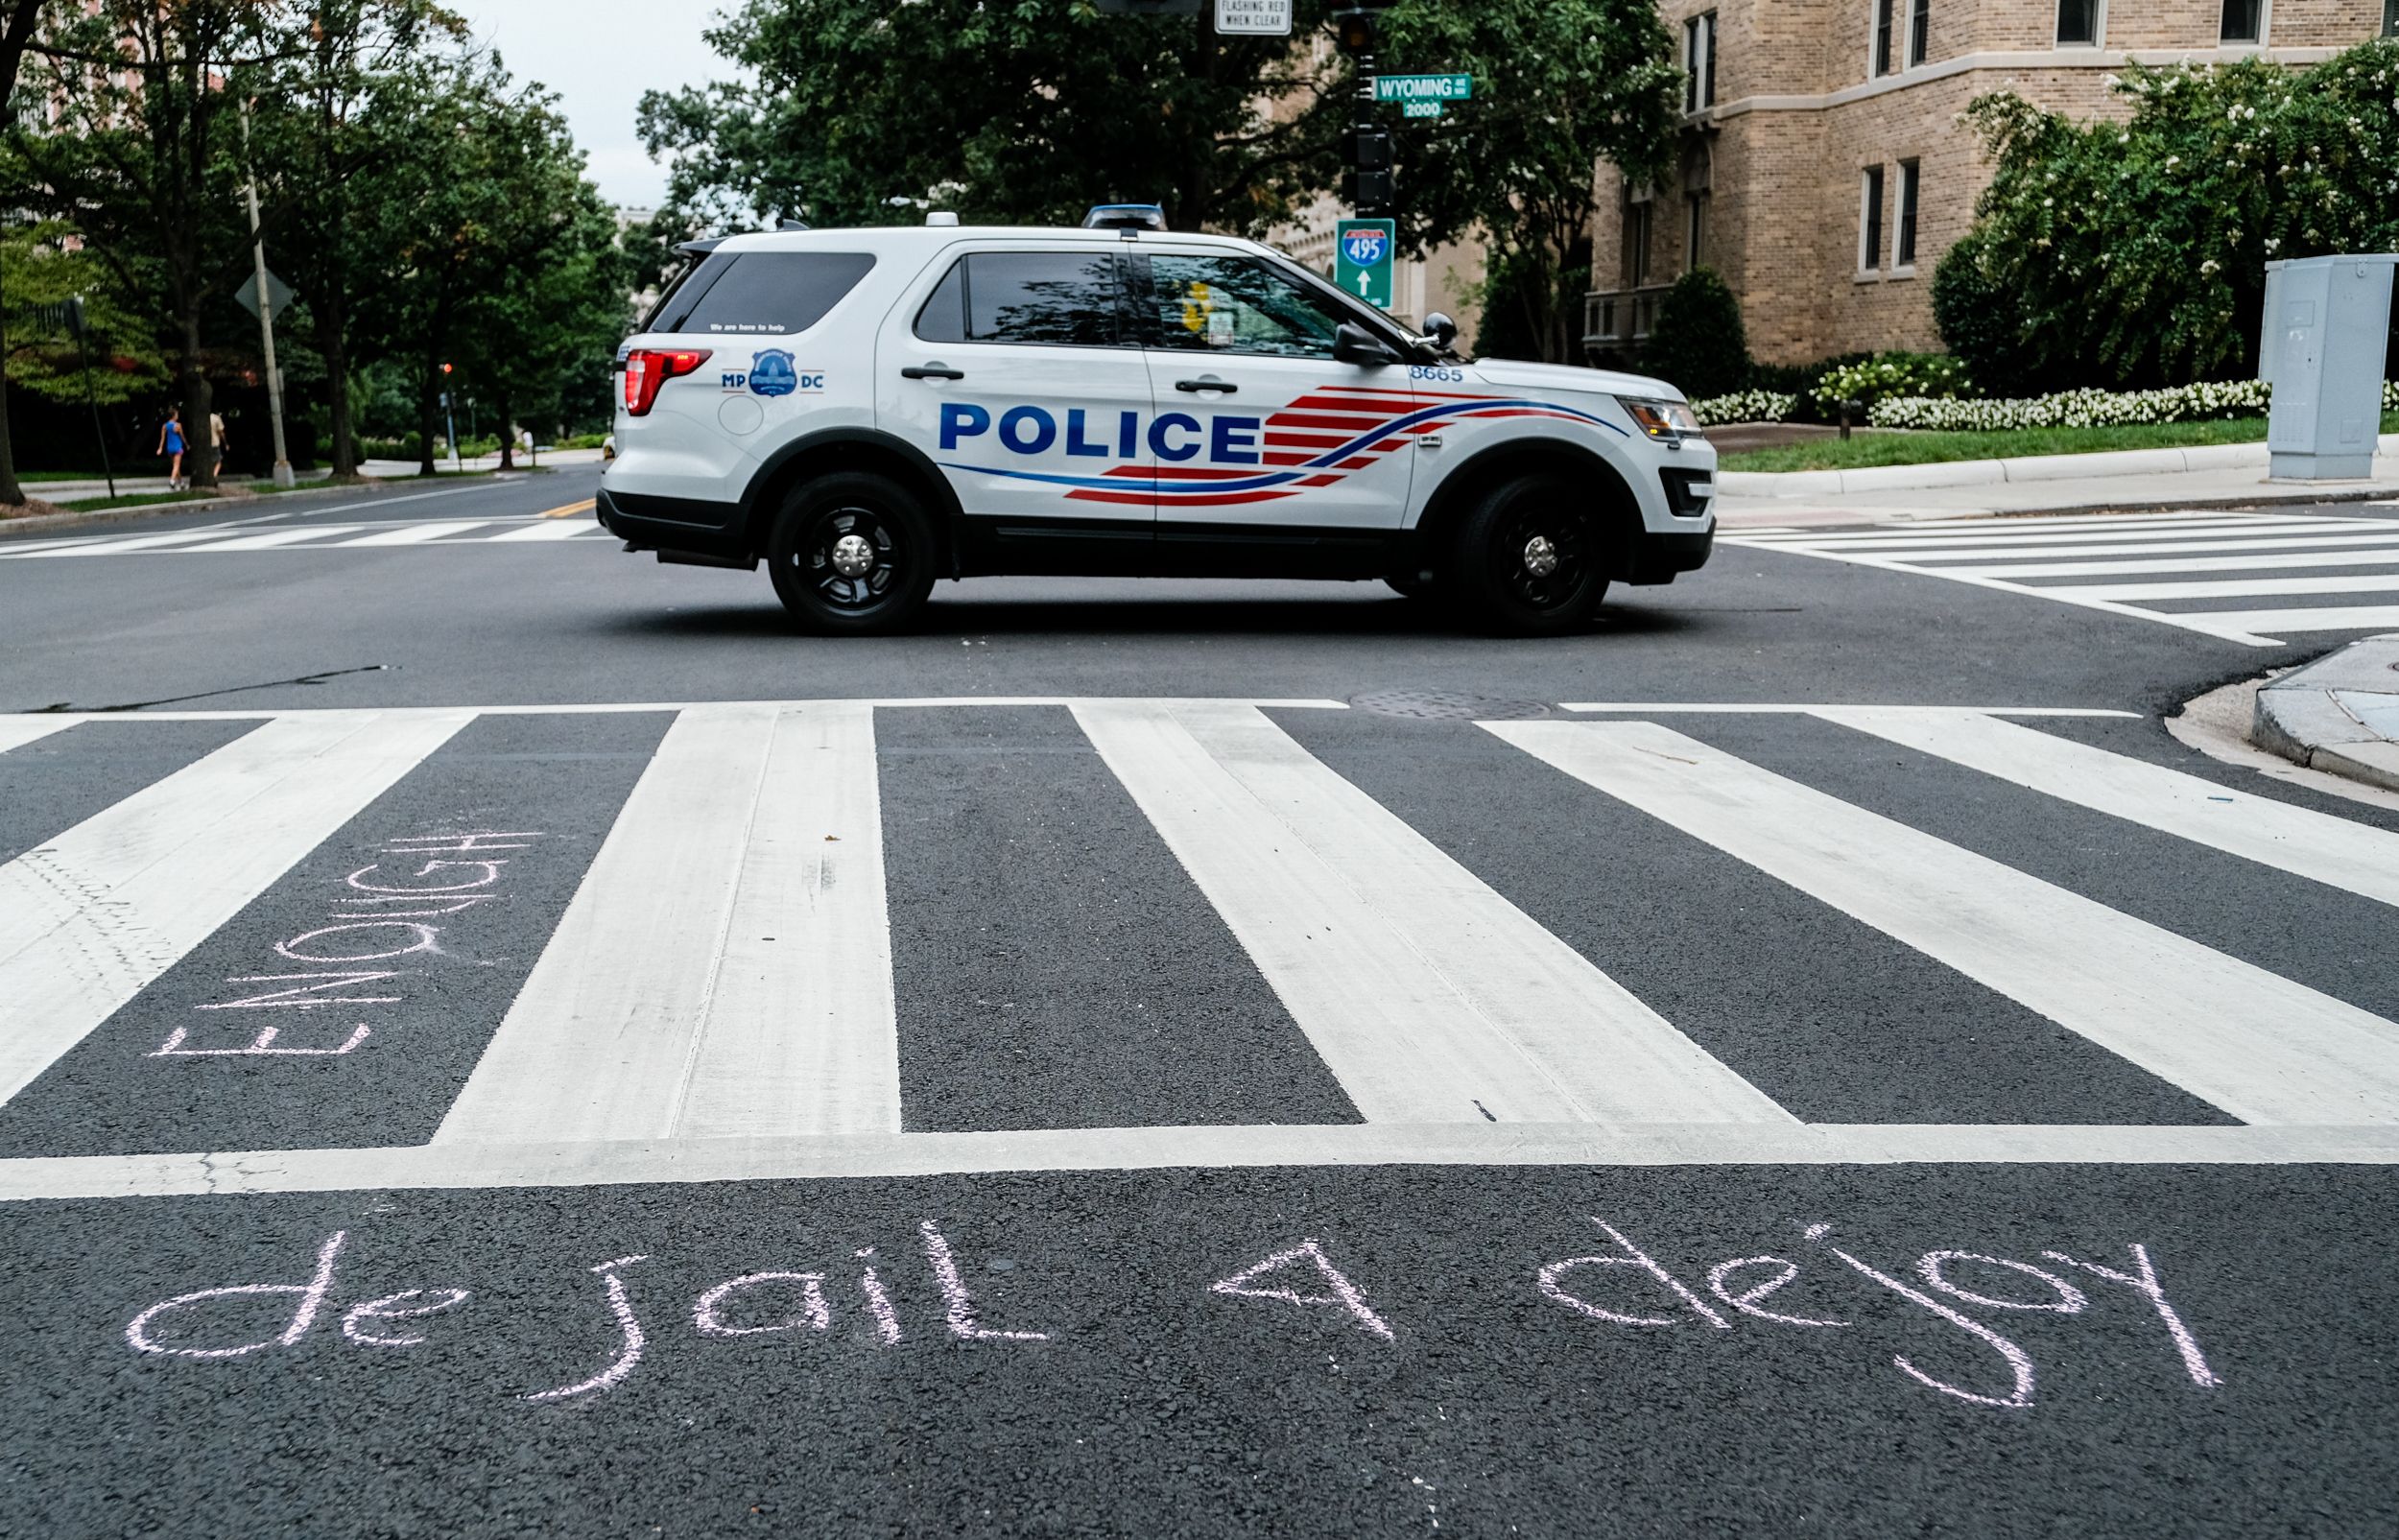 "de jail for de joy" written in chalk on a crosswalk.